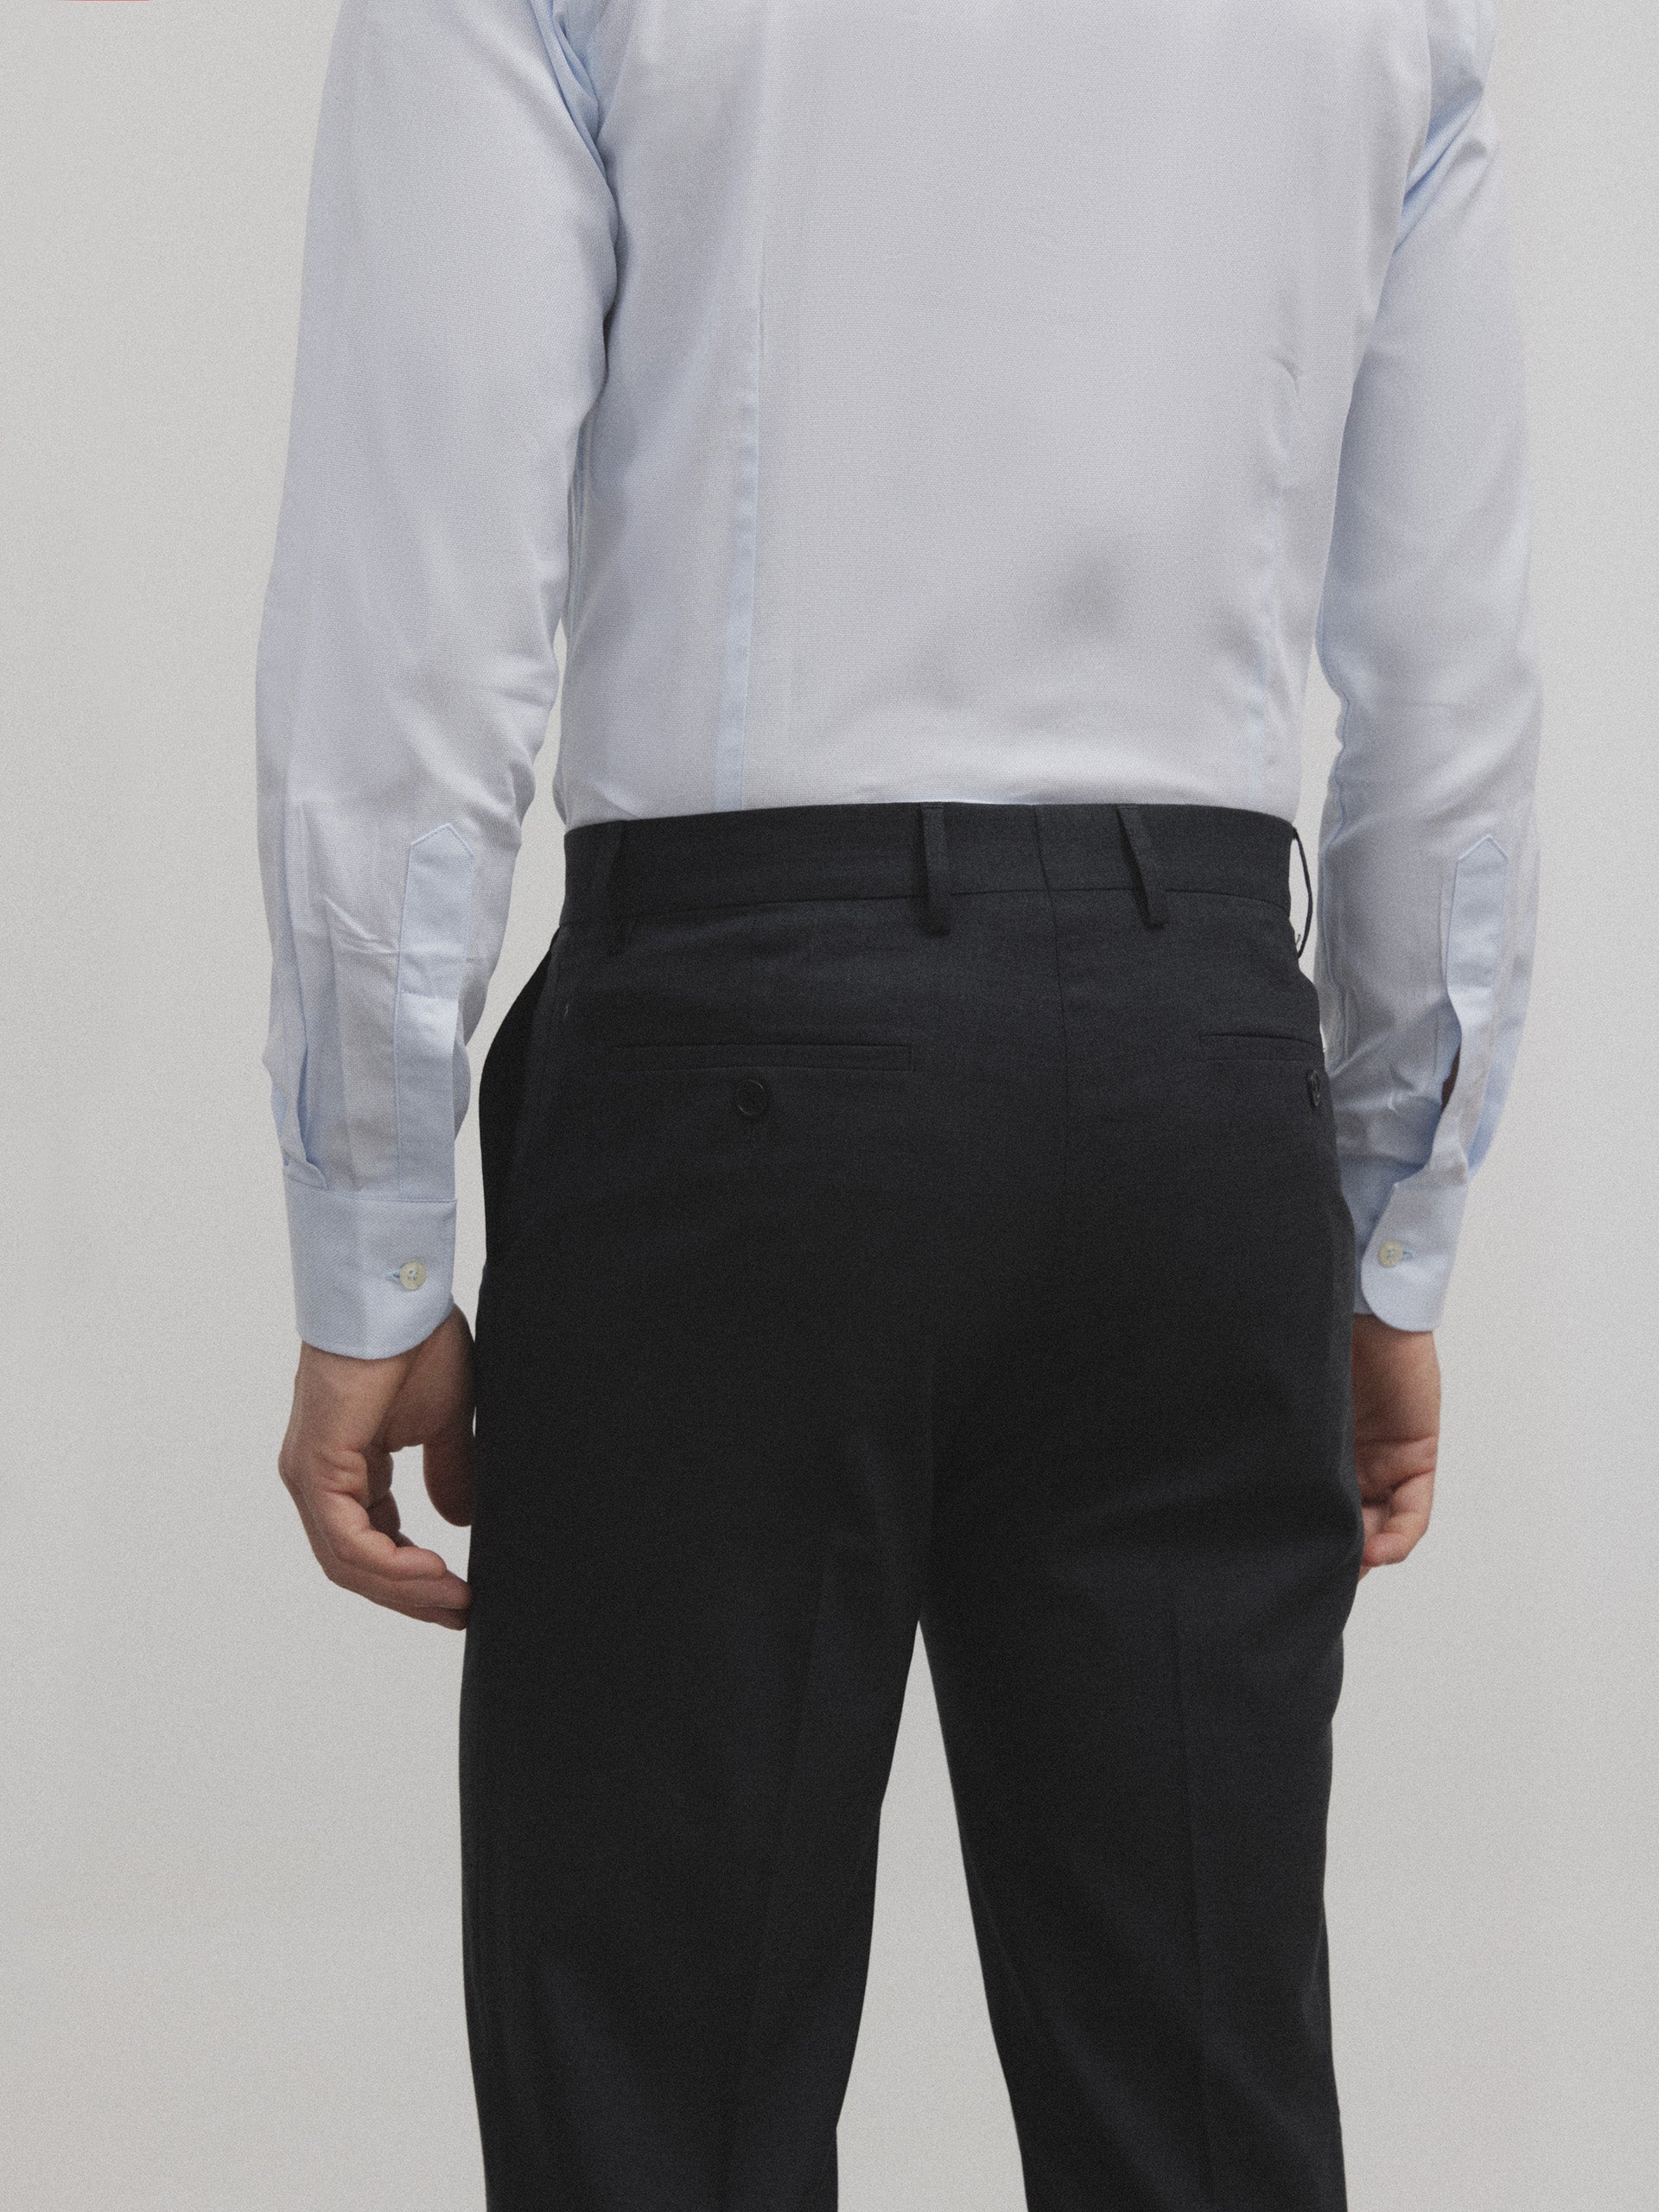 Pantalon traje natural stretch gris